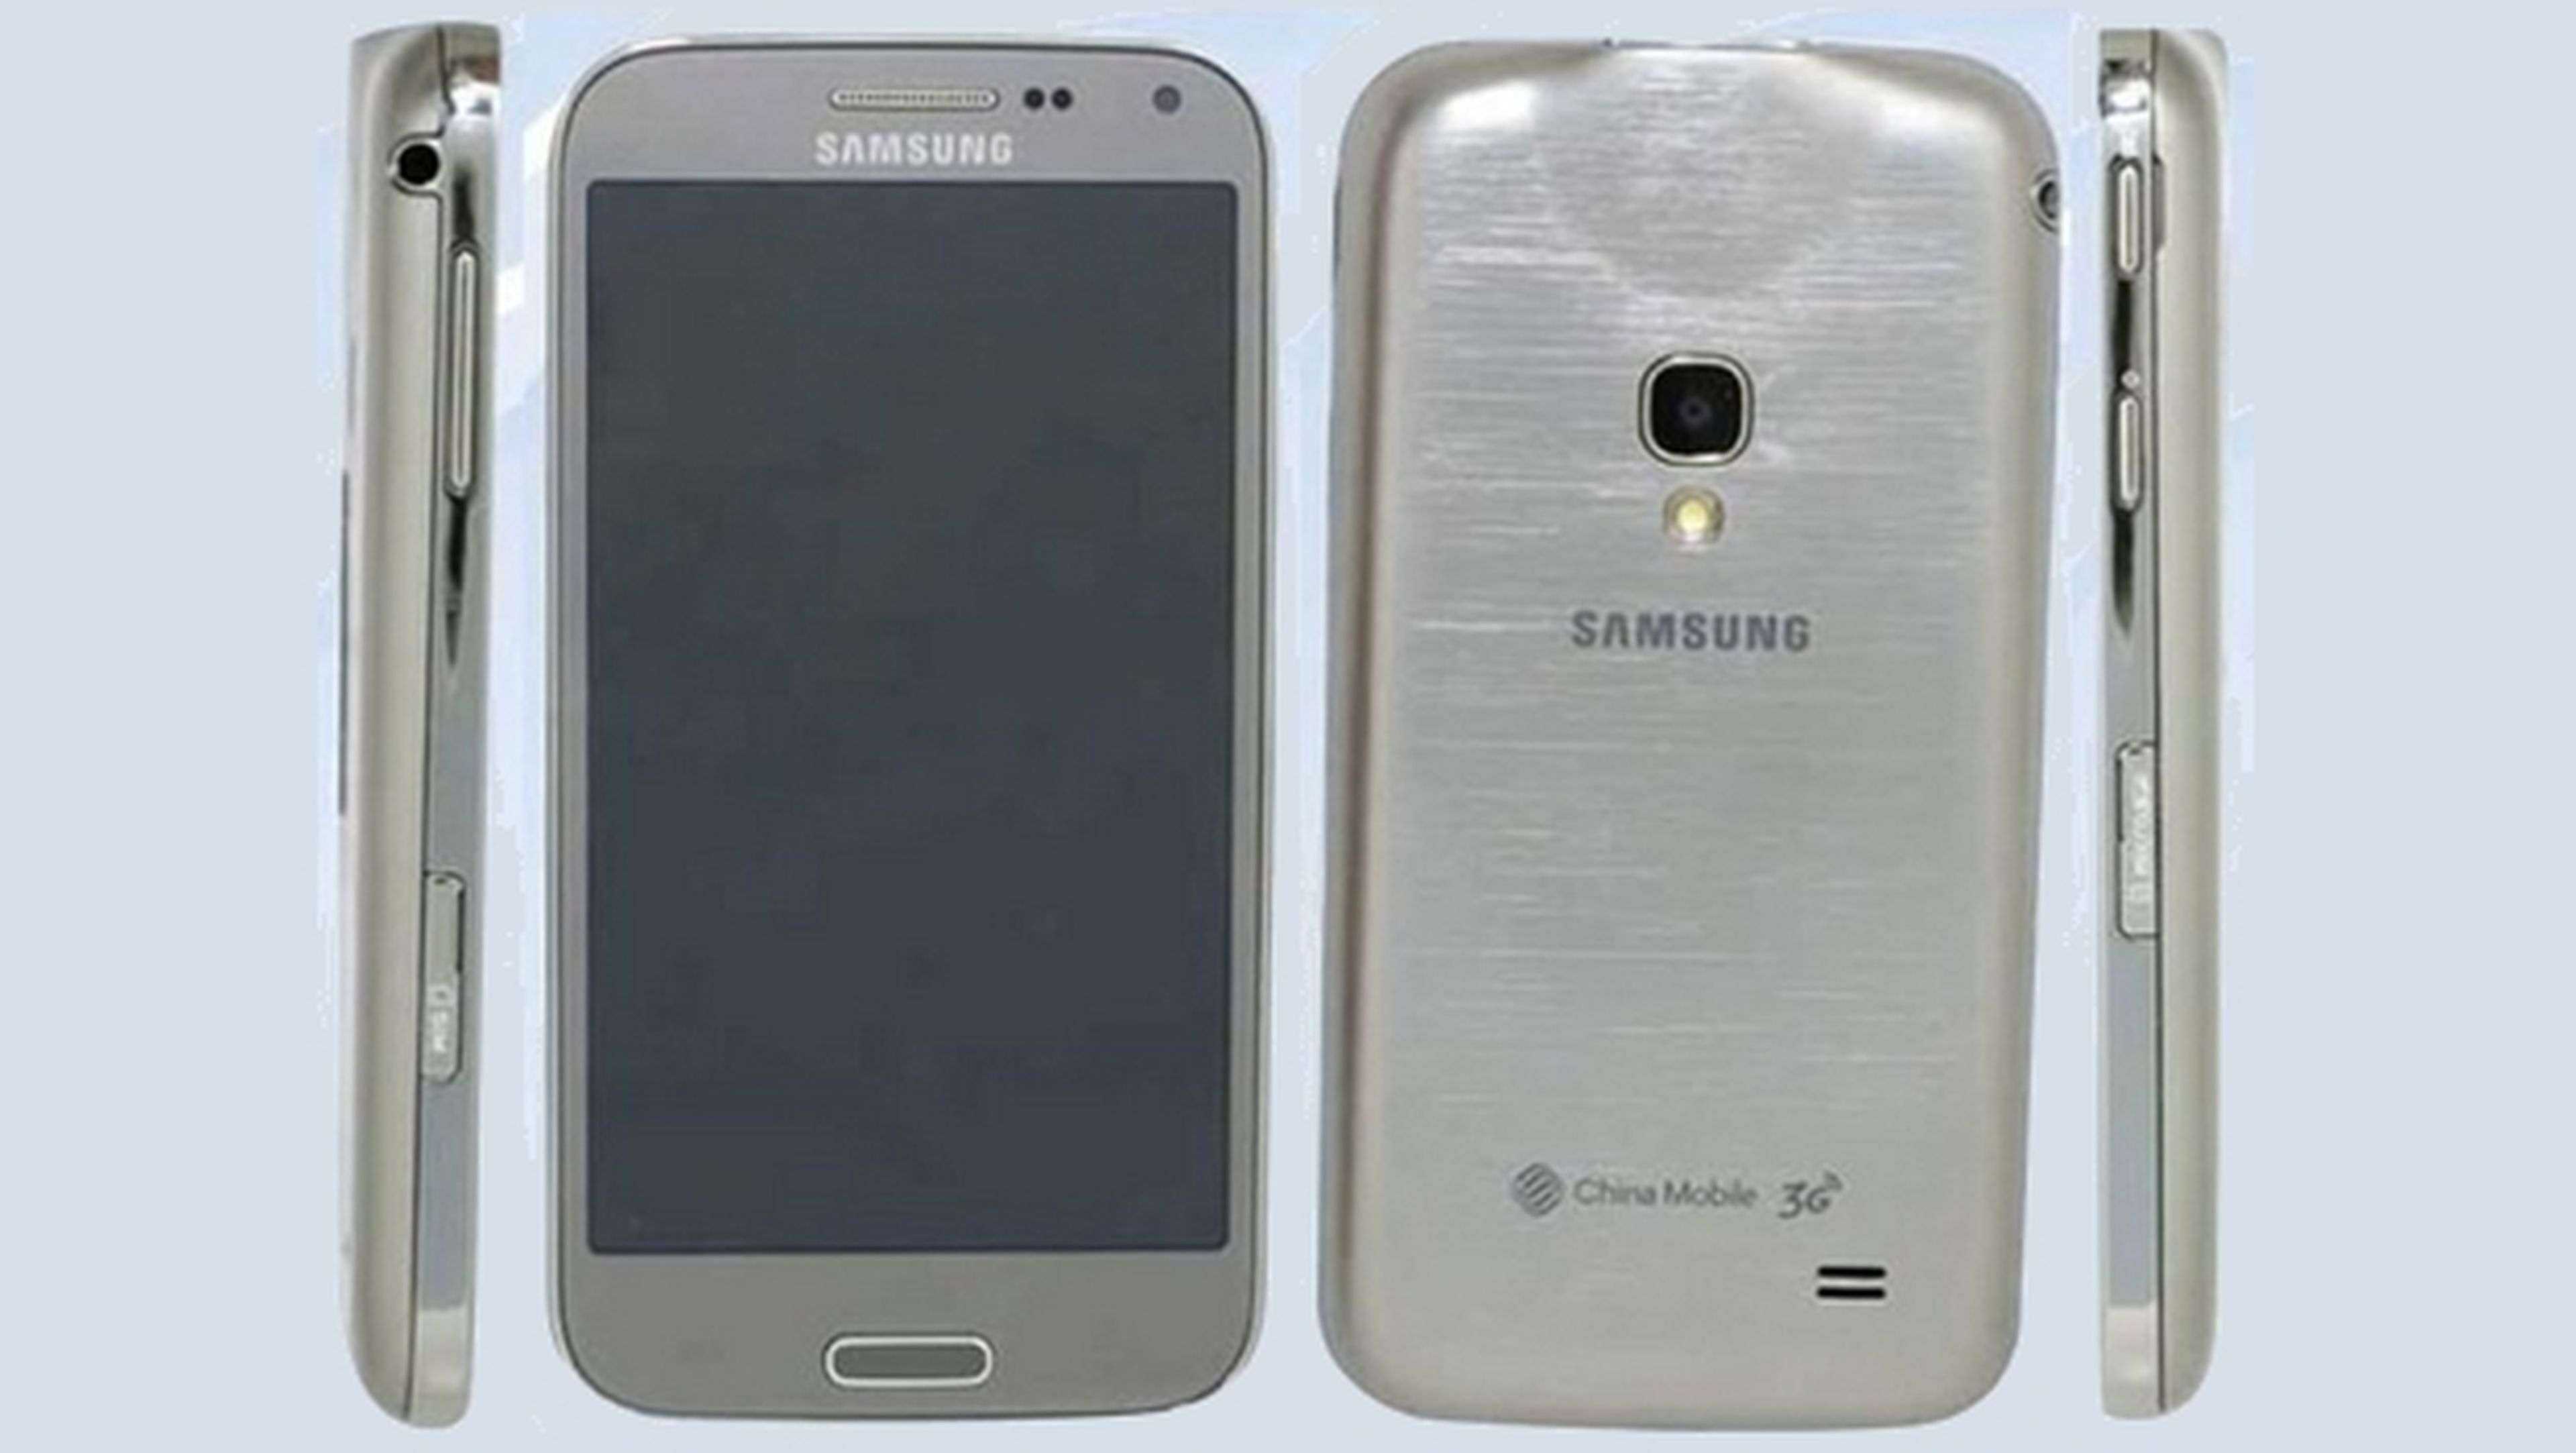 Nuevo Samsung Galaxy Beam 2, smartphone con picoproyector incorporado